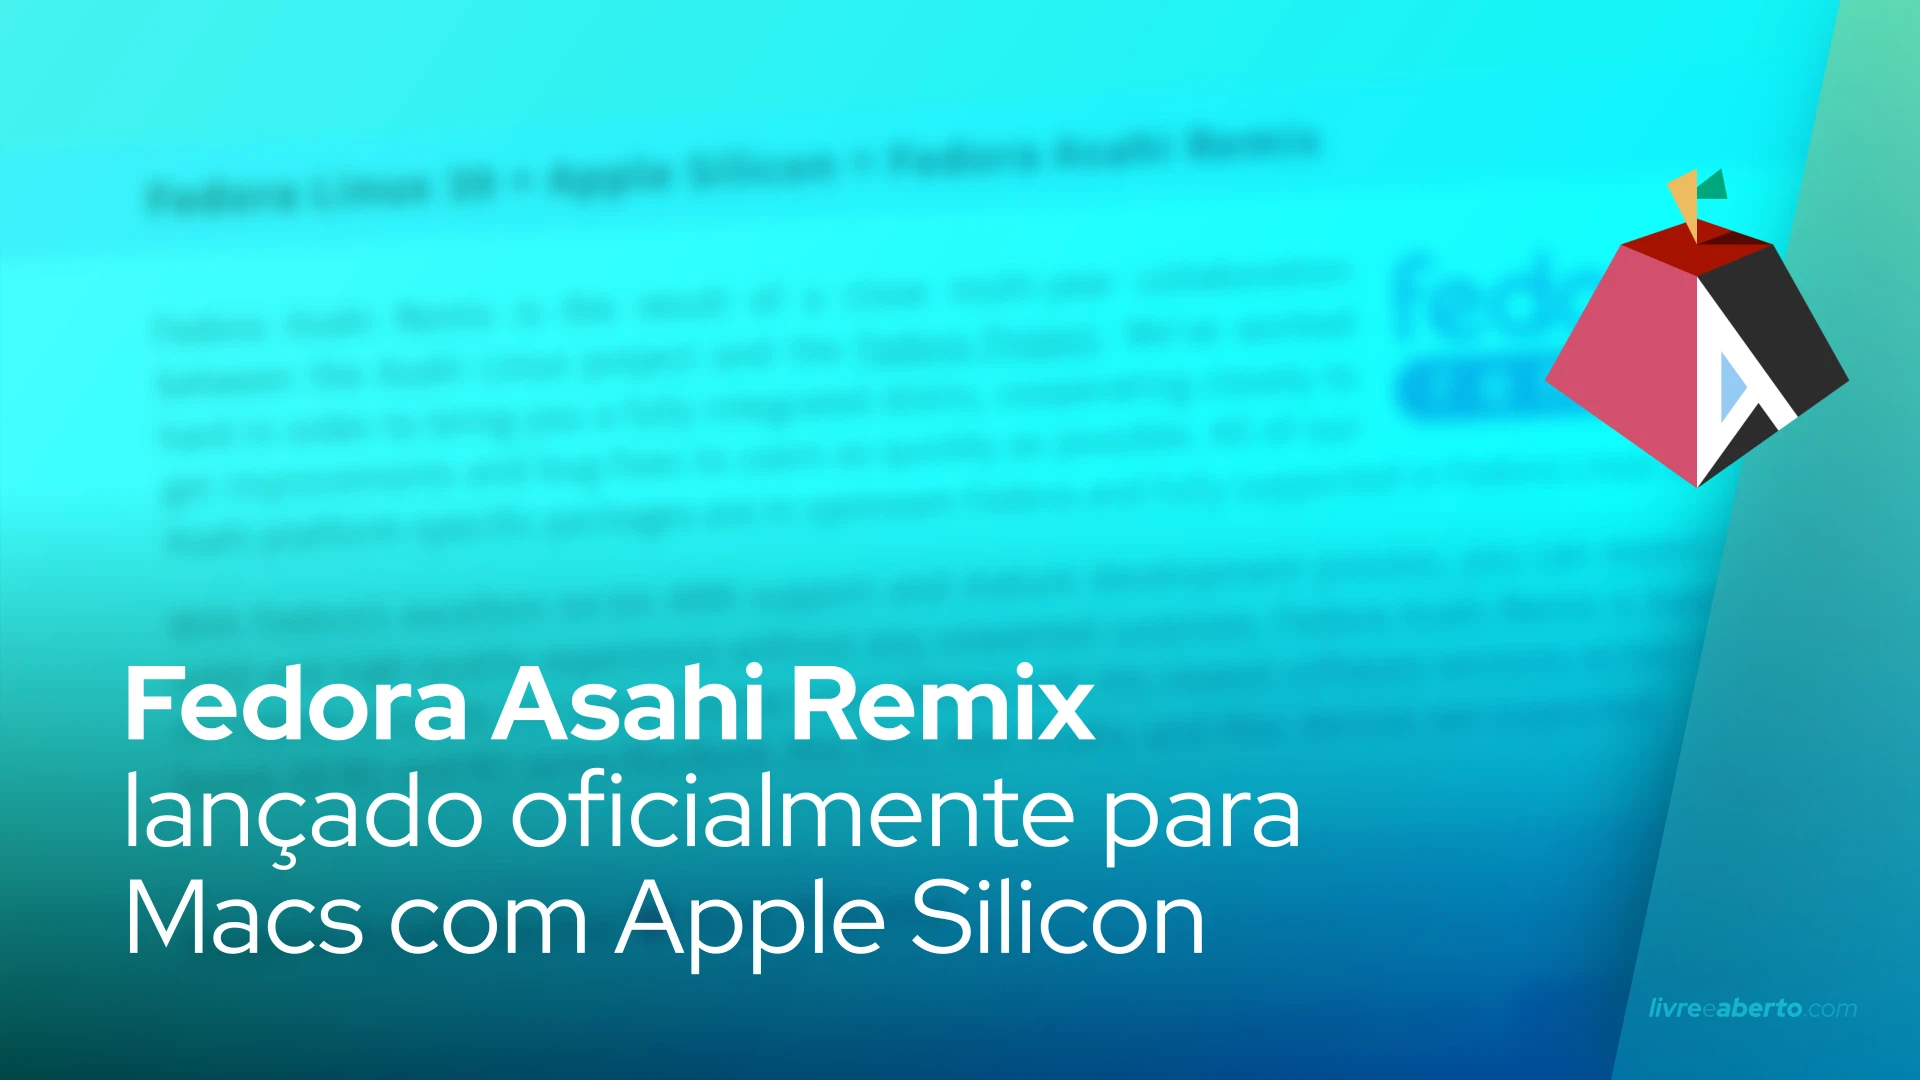 Fedora Asahi Remix lançado oficialmente para Macs com Apple Silicon